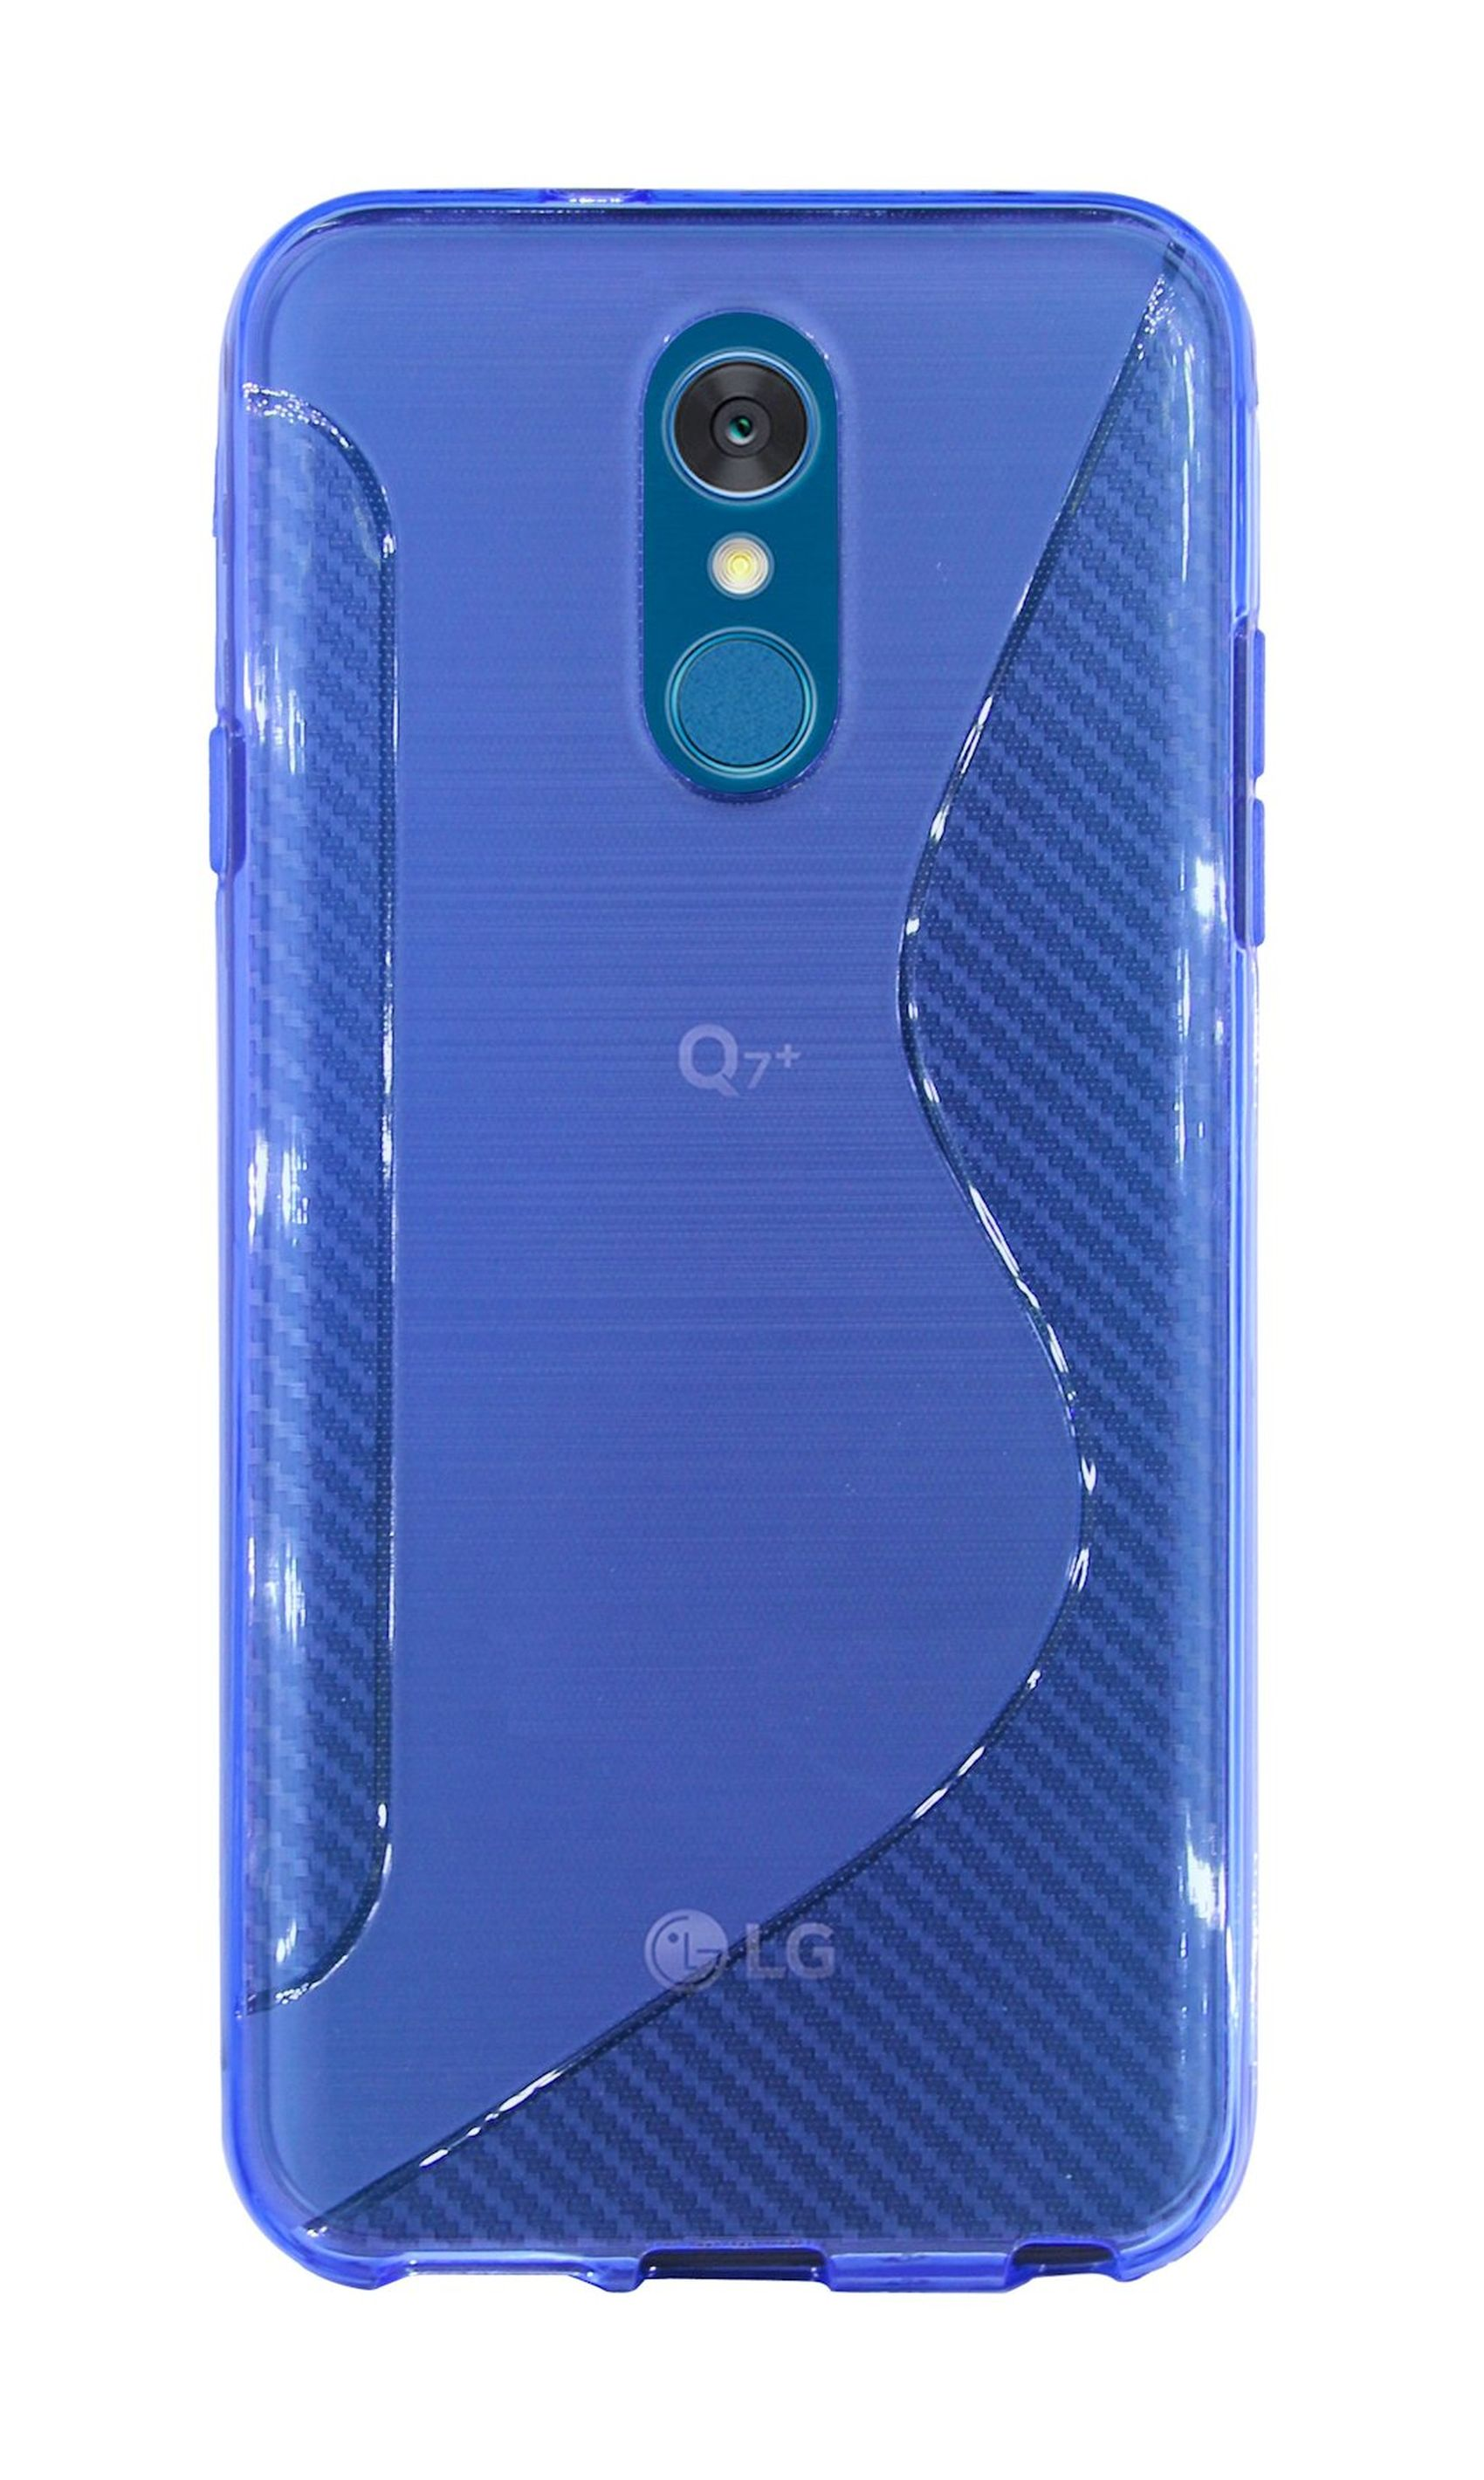 Blau Q7a, S-Line LG, COFI Bumper, Cover,